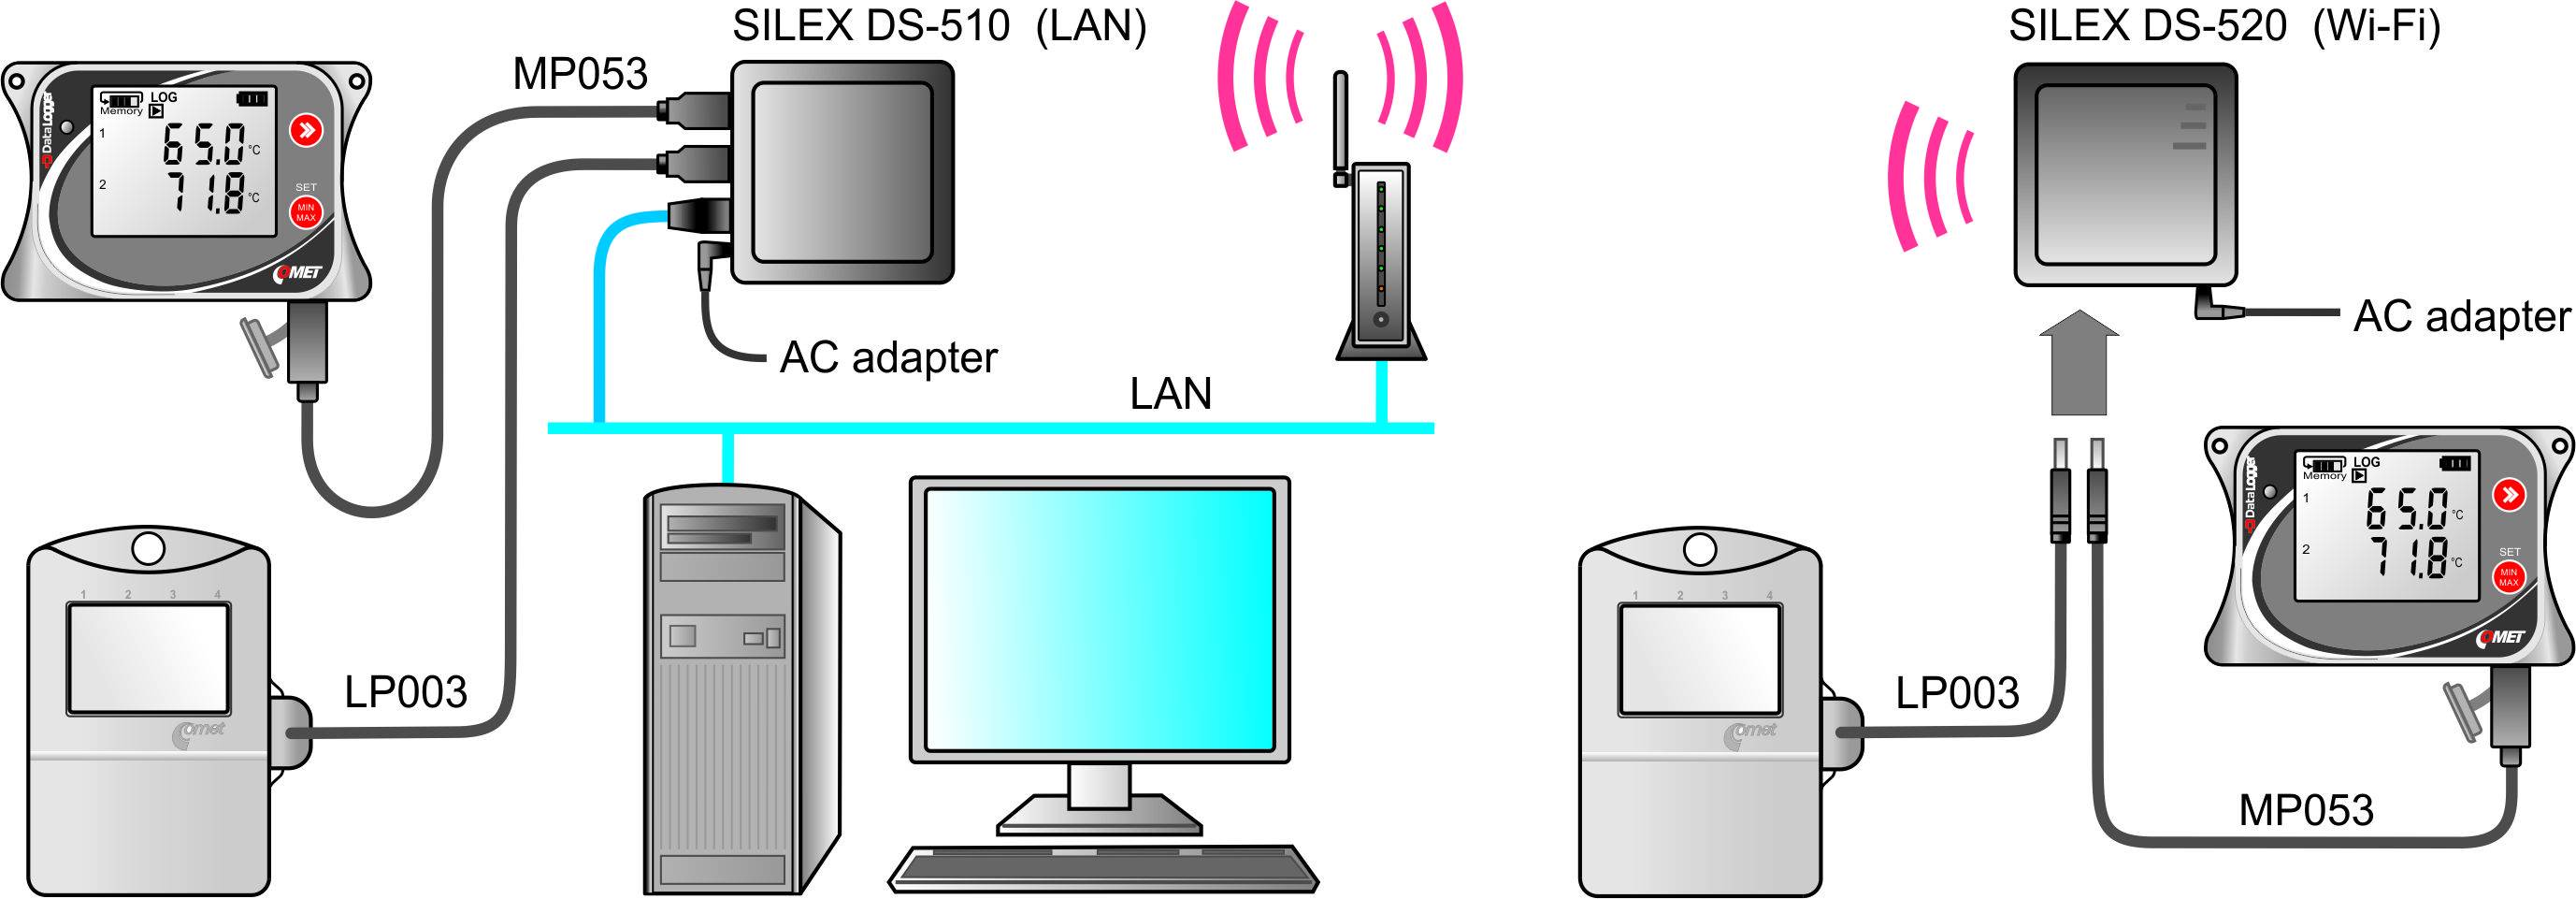 Телефон управление usb. USB сервер Ethernet. Silex DS-520 an. Silex DS-510. Ethernet сервер устройств CS-3102.